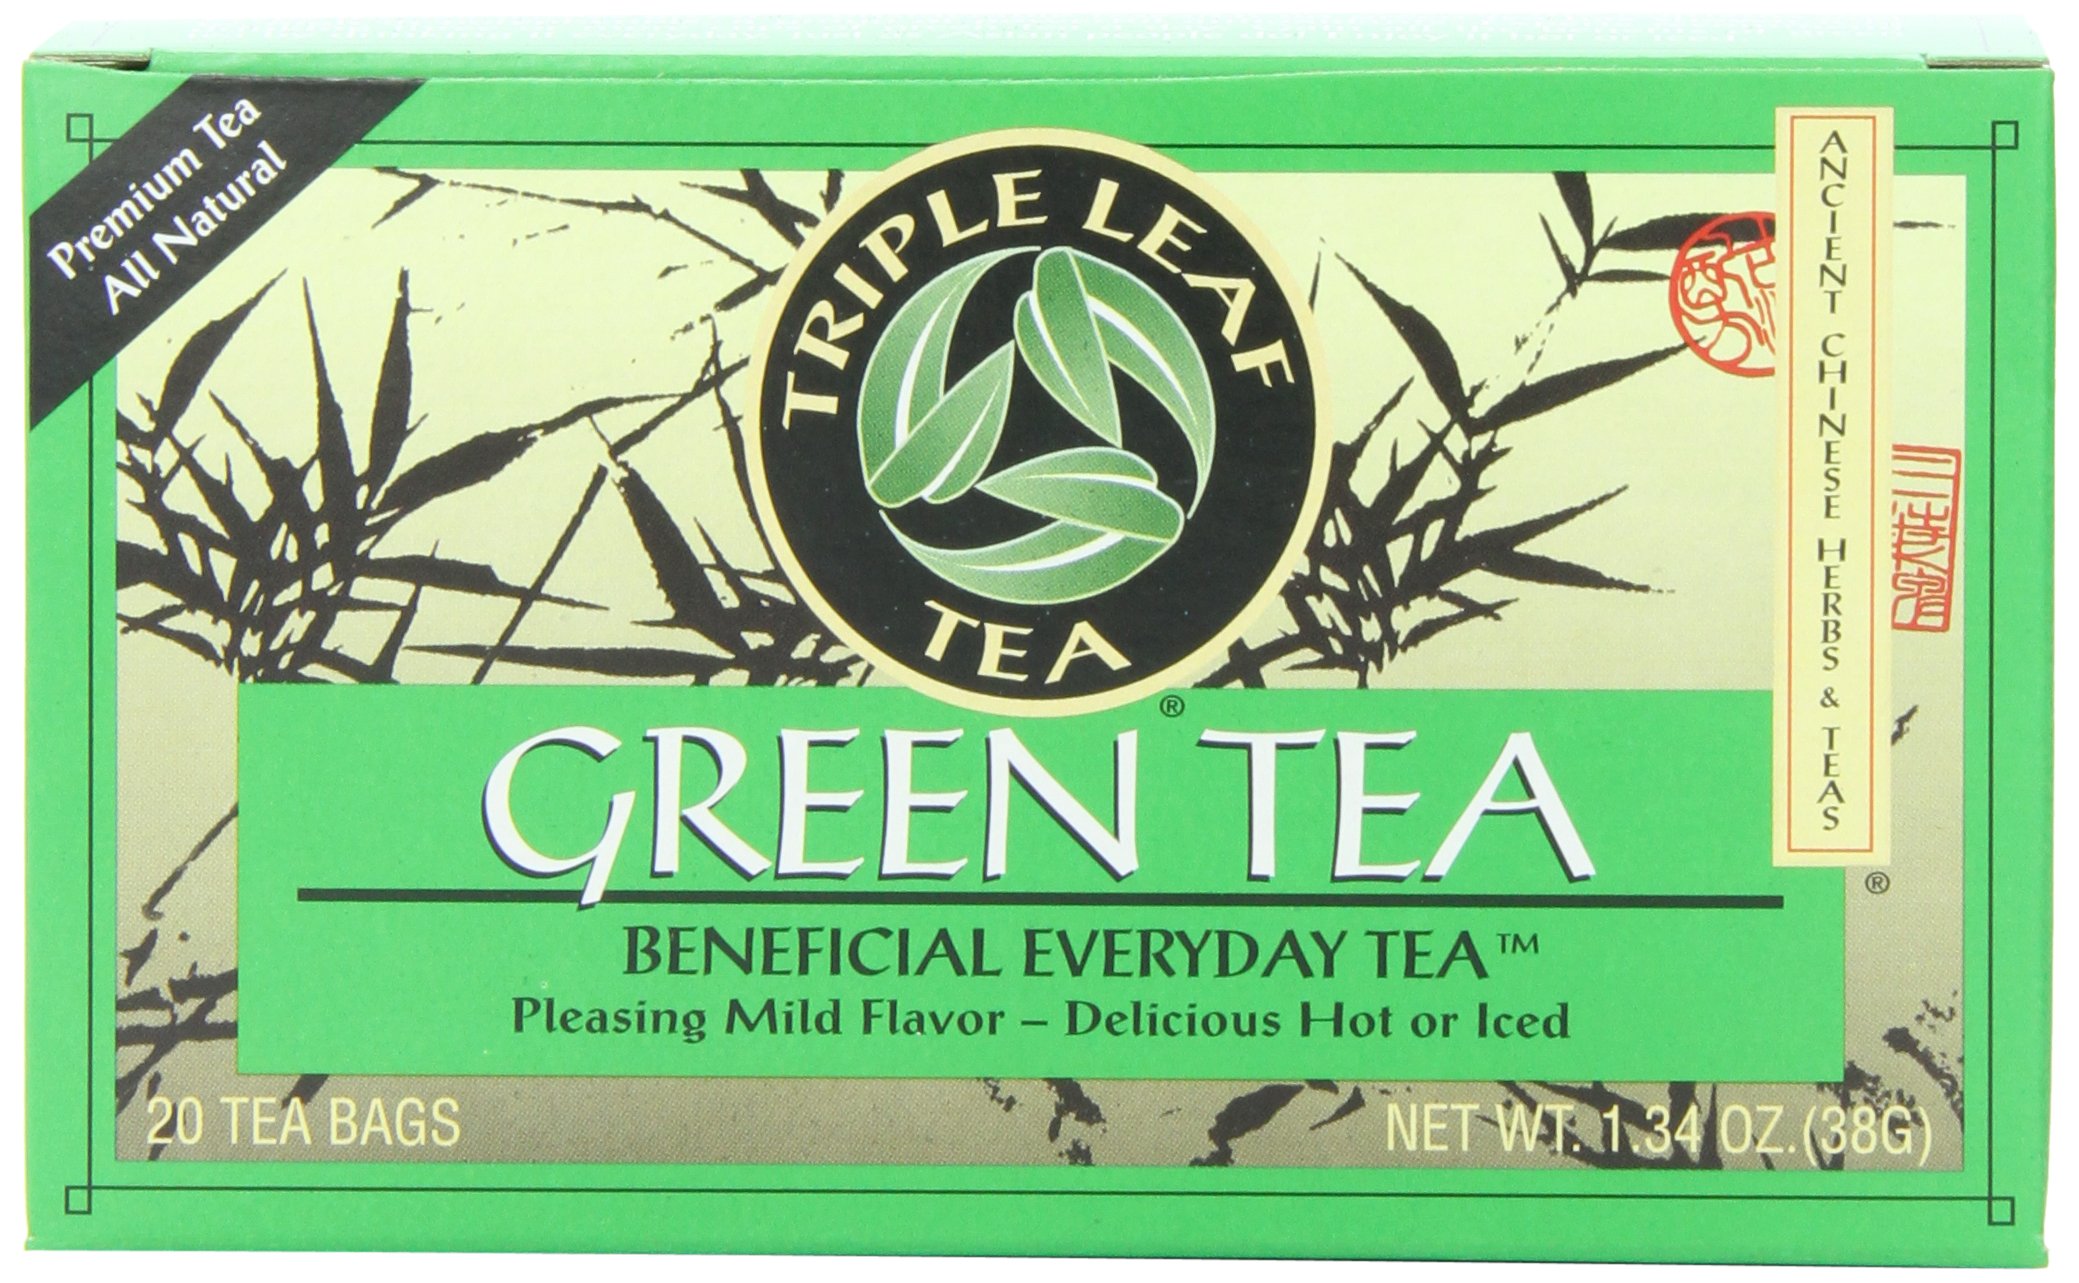 Triple Leaf Dieters Green Tea Reviews